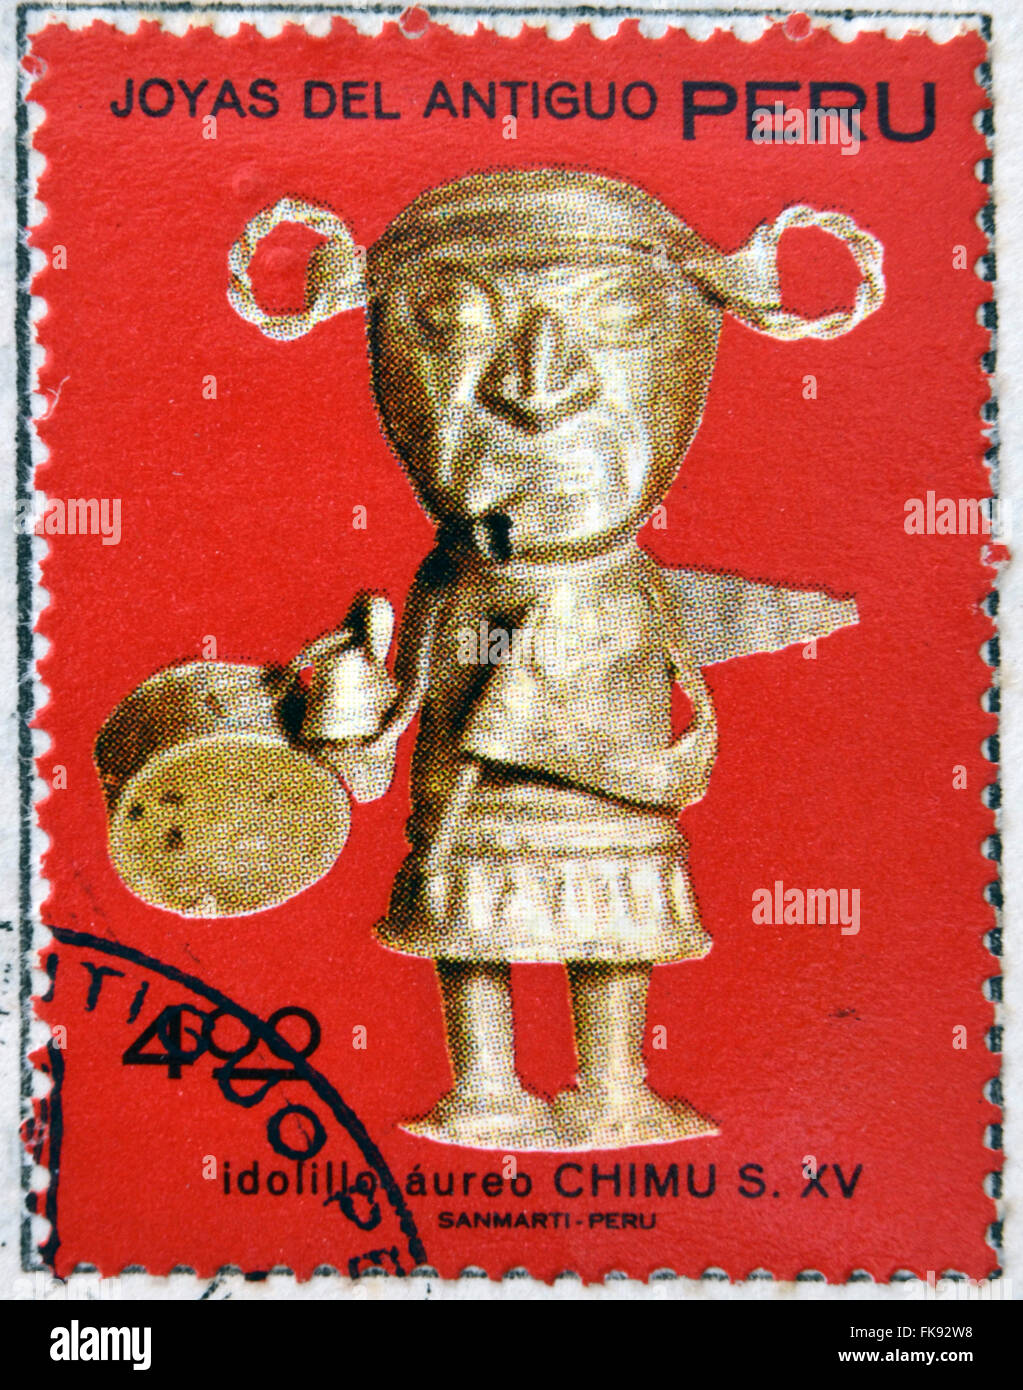 Pérou - circa 1972 : timbre imprimé au Pérou dédié aux bijoux de l'ancien Pérou, Auric montre peu d'idol Chimu, vers 1972 Banque D'Images